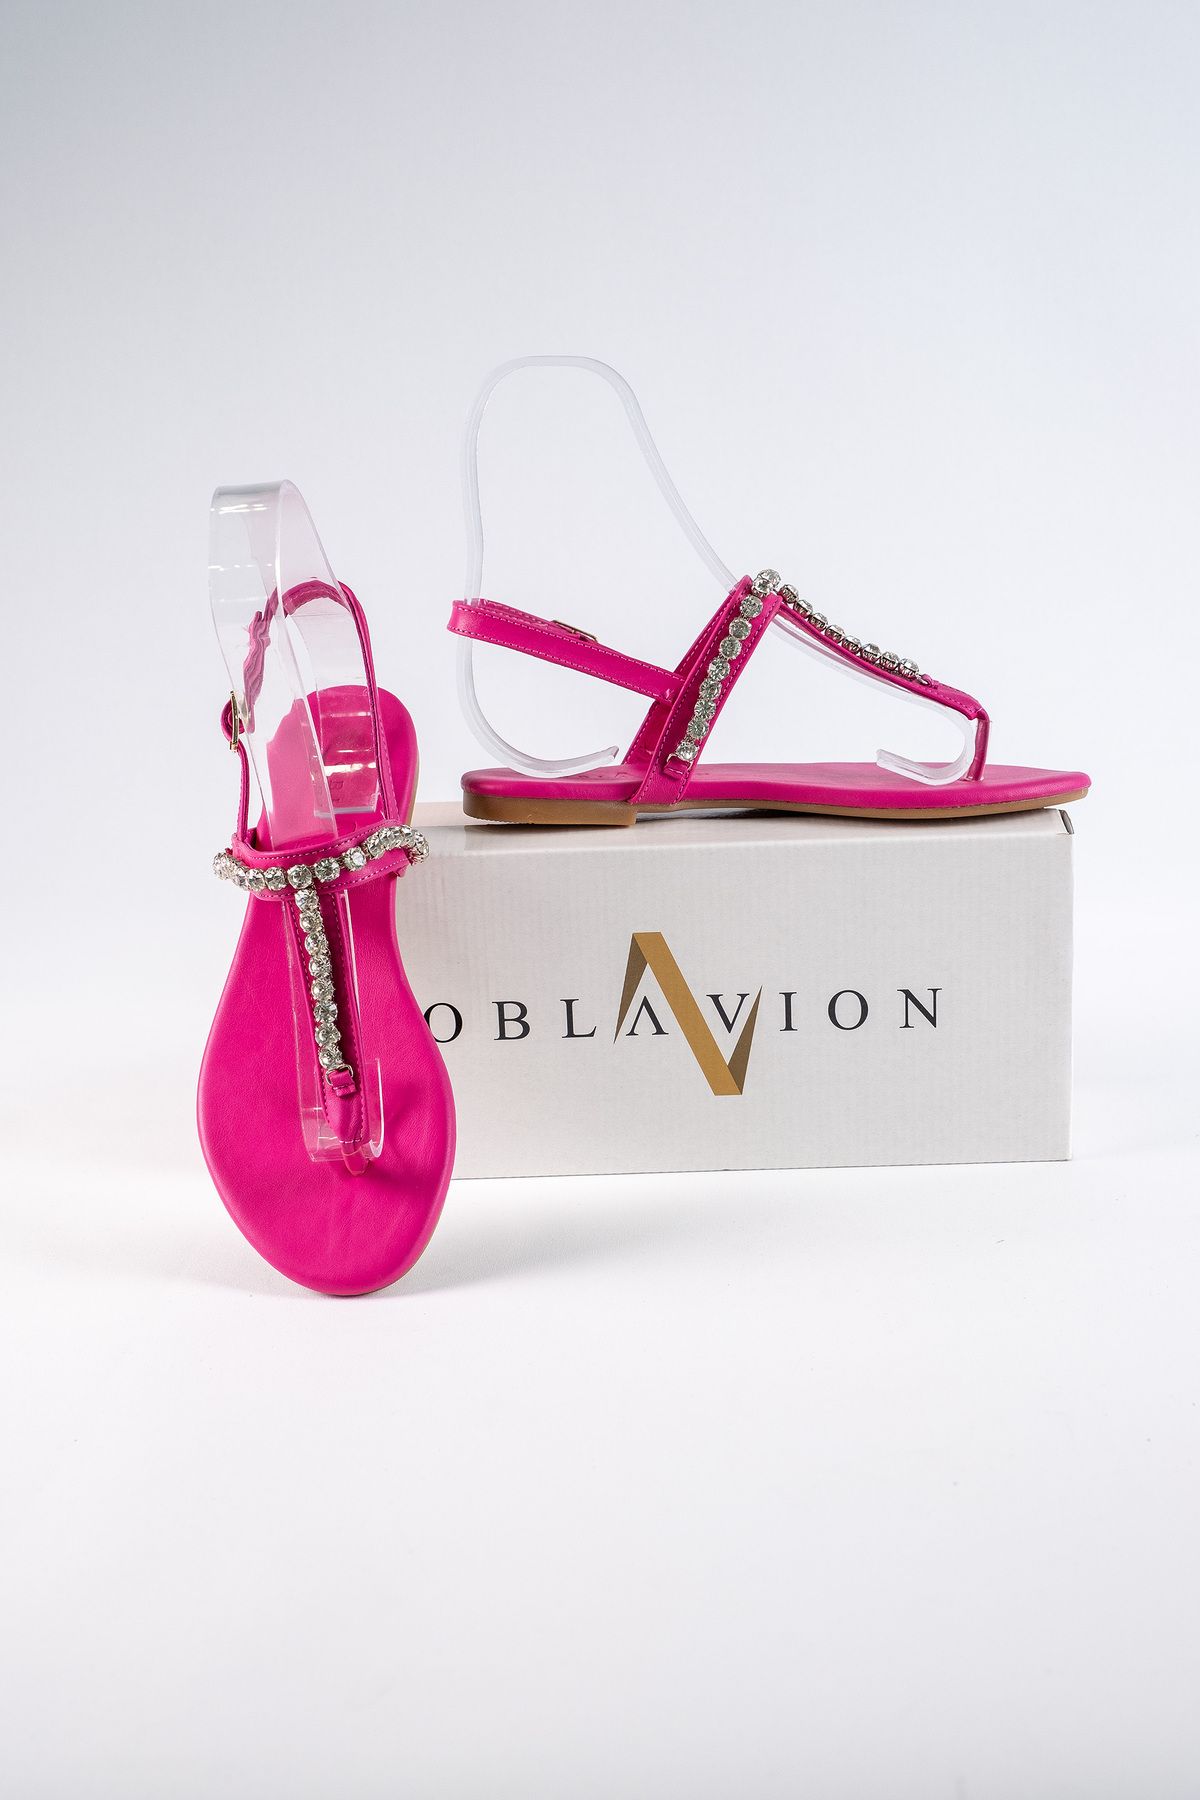 Oblavion Lavion Yeni Sezon Hakiki Deri Fuşya Yuvarlık Taşlı Günlük Kadın Sandalet